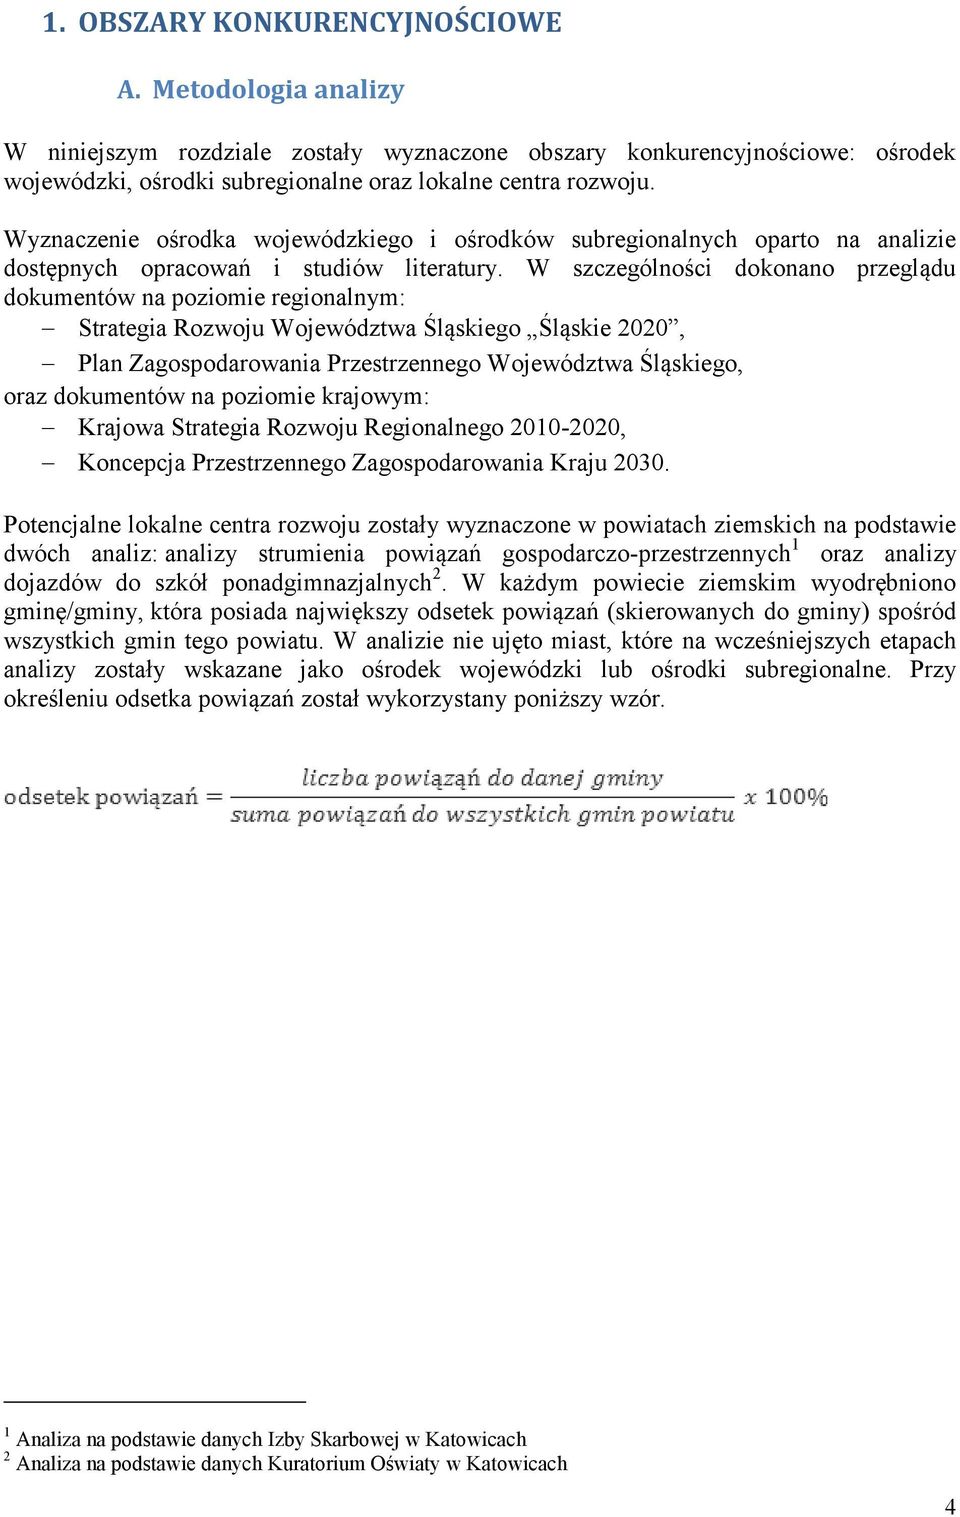 W szczególności dokonano przeglądu dokumentów na poziomie regionalnym: Strategia Rozwoju Województwa Śląskiego Śląskie 2020, Plan Zagospodarowania Przestrzennego Województwa Śląskiego, oraz